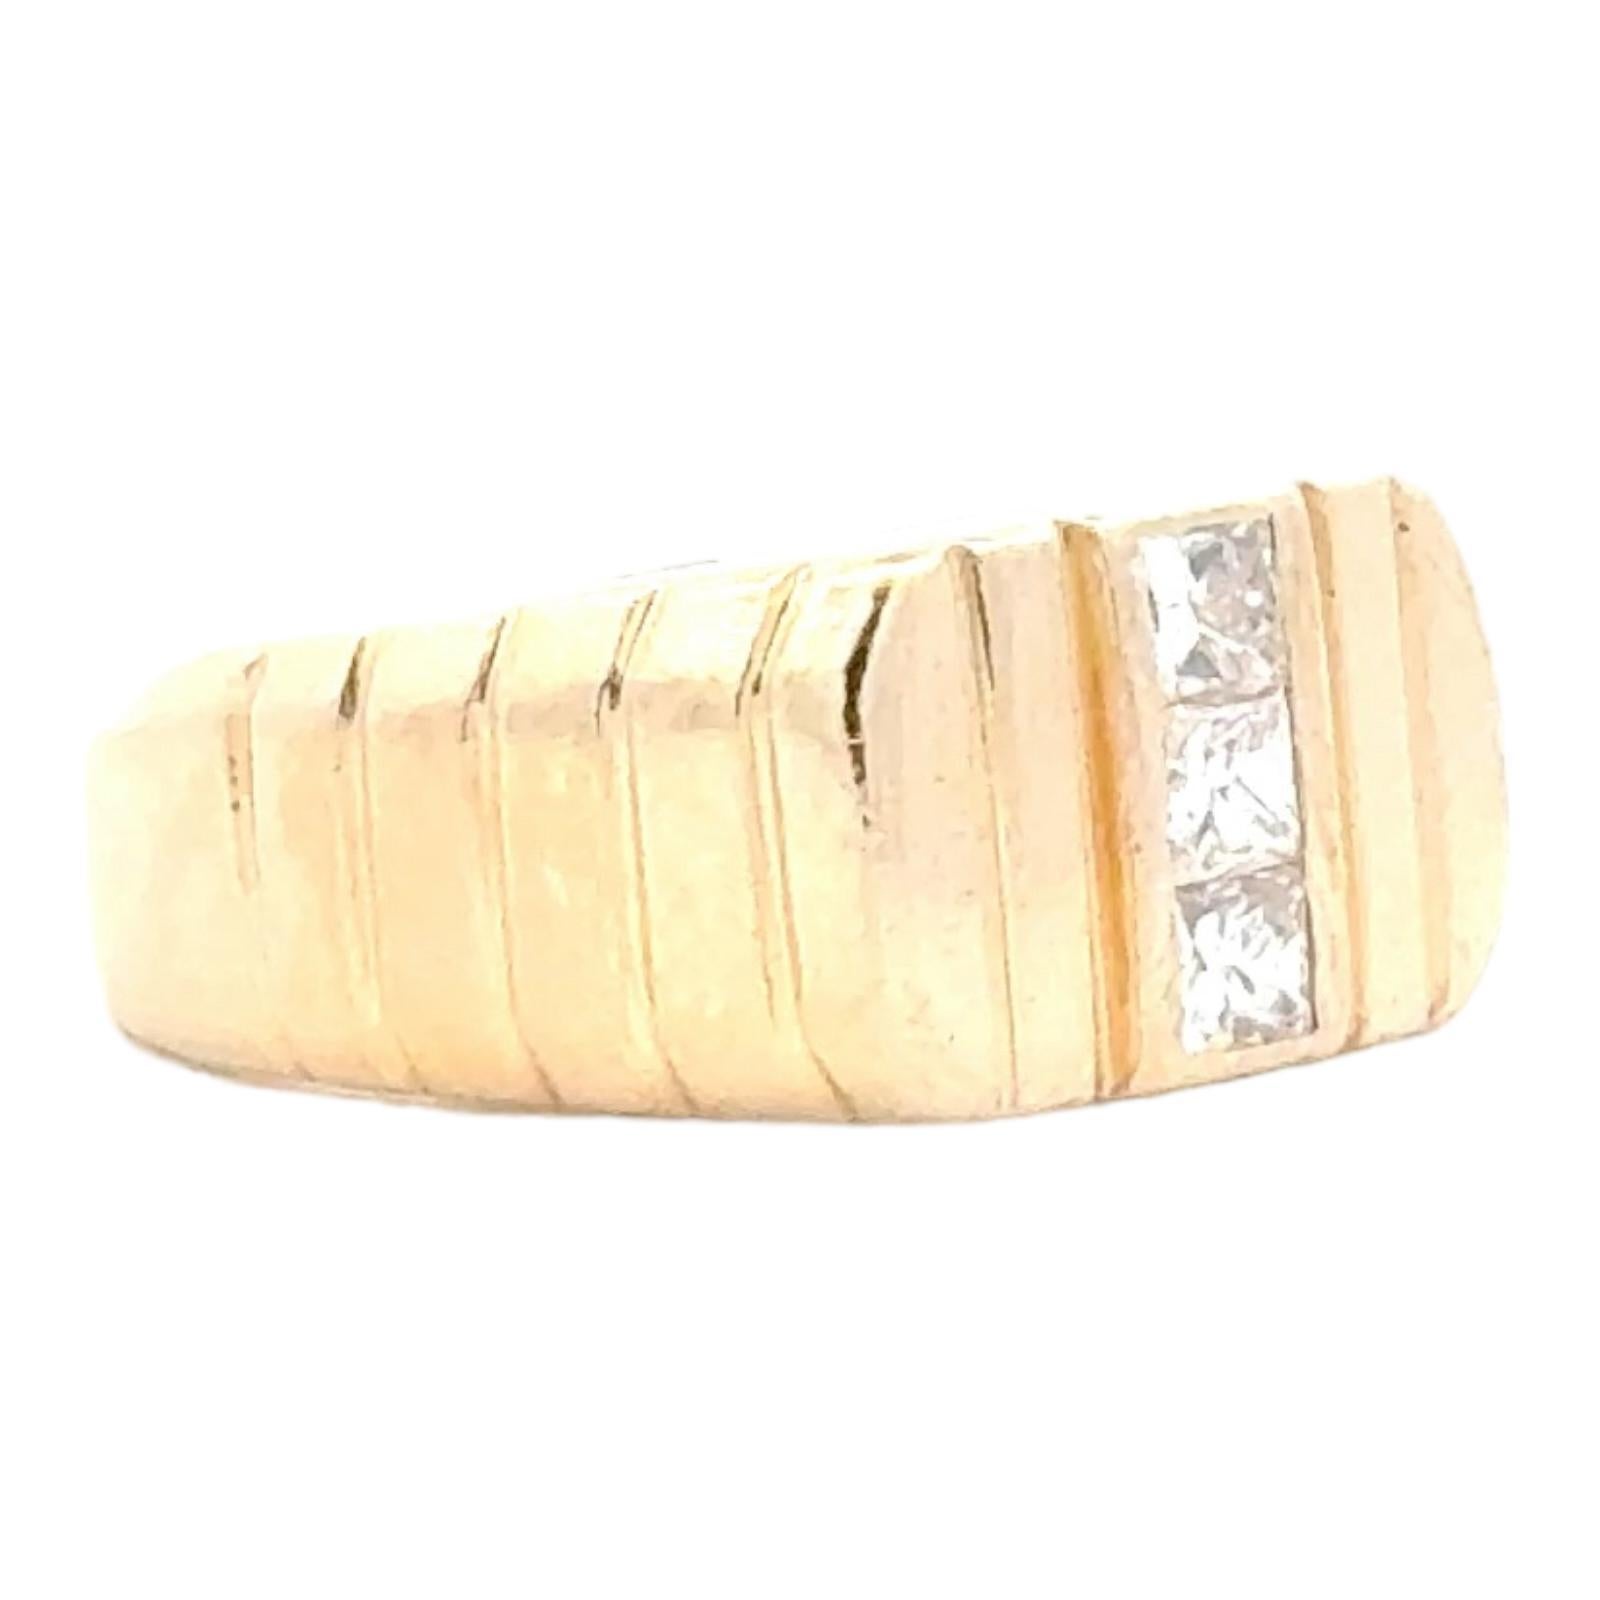 Ring mit drei Diamanten aus 14 Karat Gelbgold. Der Ring enthält 3 Diamanten im Prinzessinnenschliff mit einem Gesamtgewicht von ca. 0,50 Karat und den Farb- und Reinheitsgraden G-H und VS. Das Band ist 5-9 mm breit und hat die Größe 7 (kann